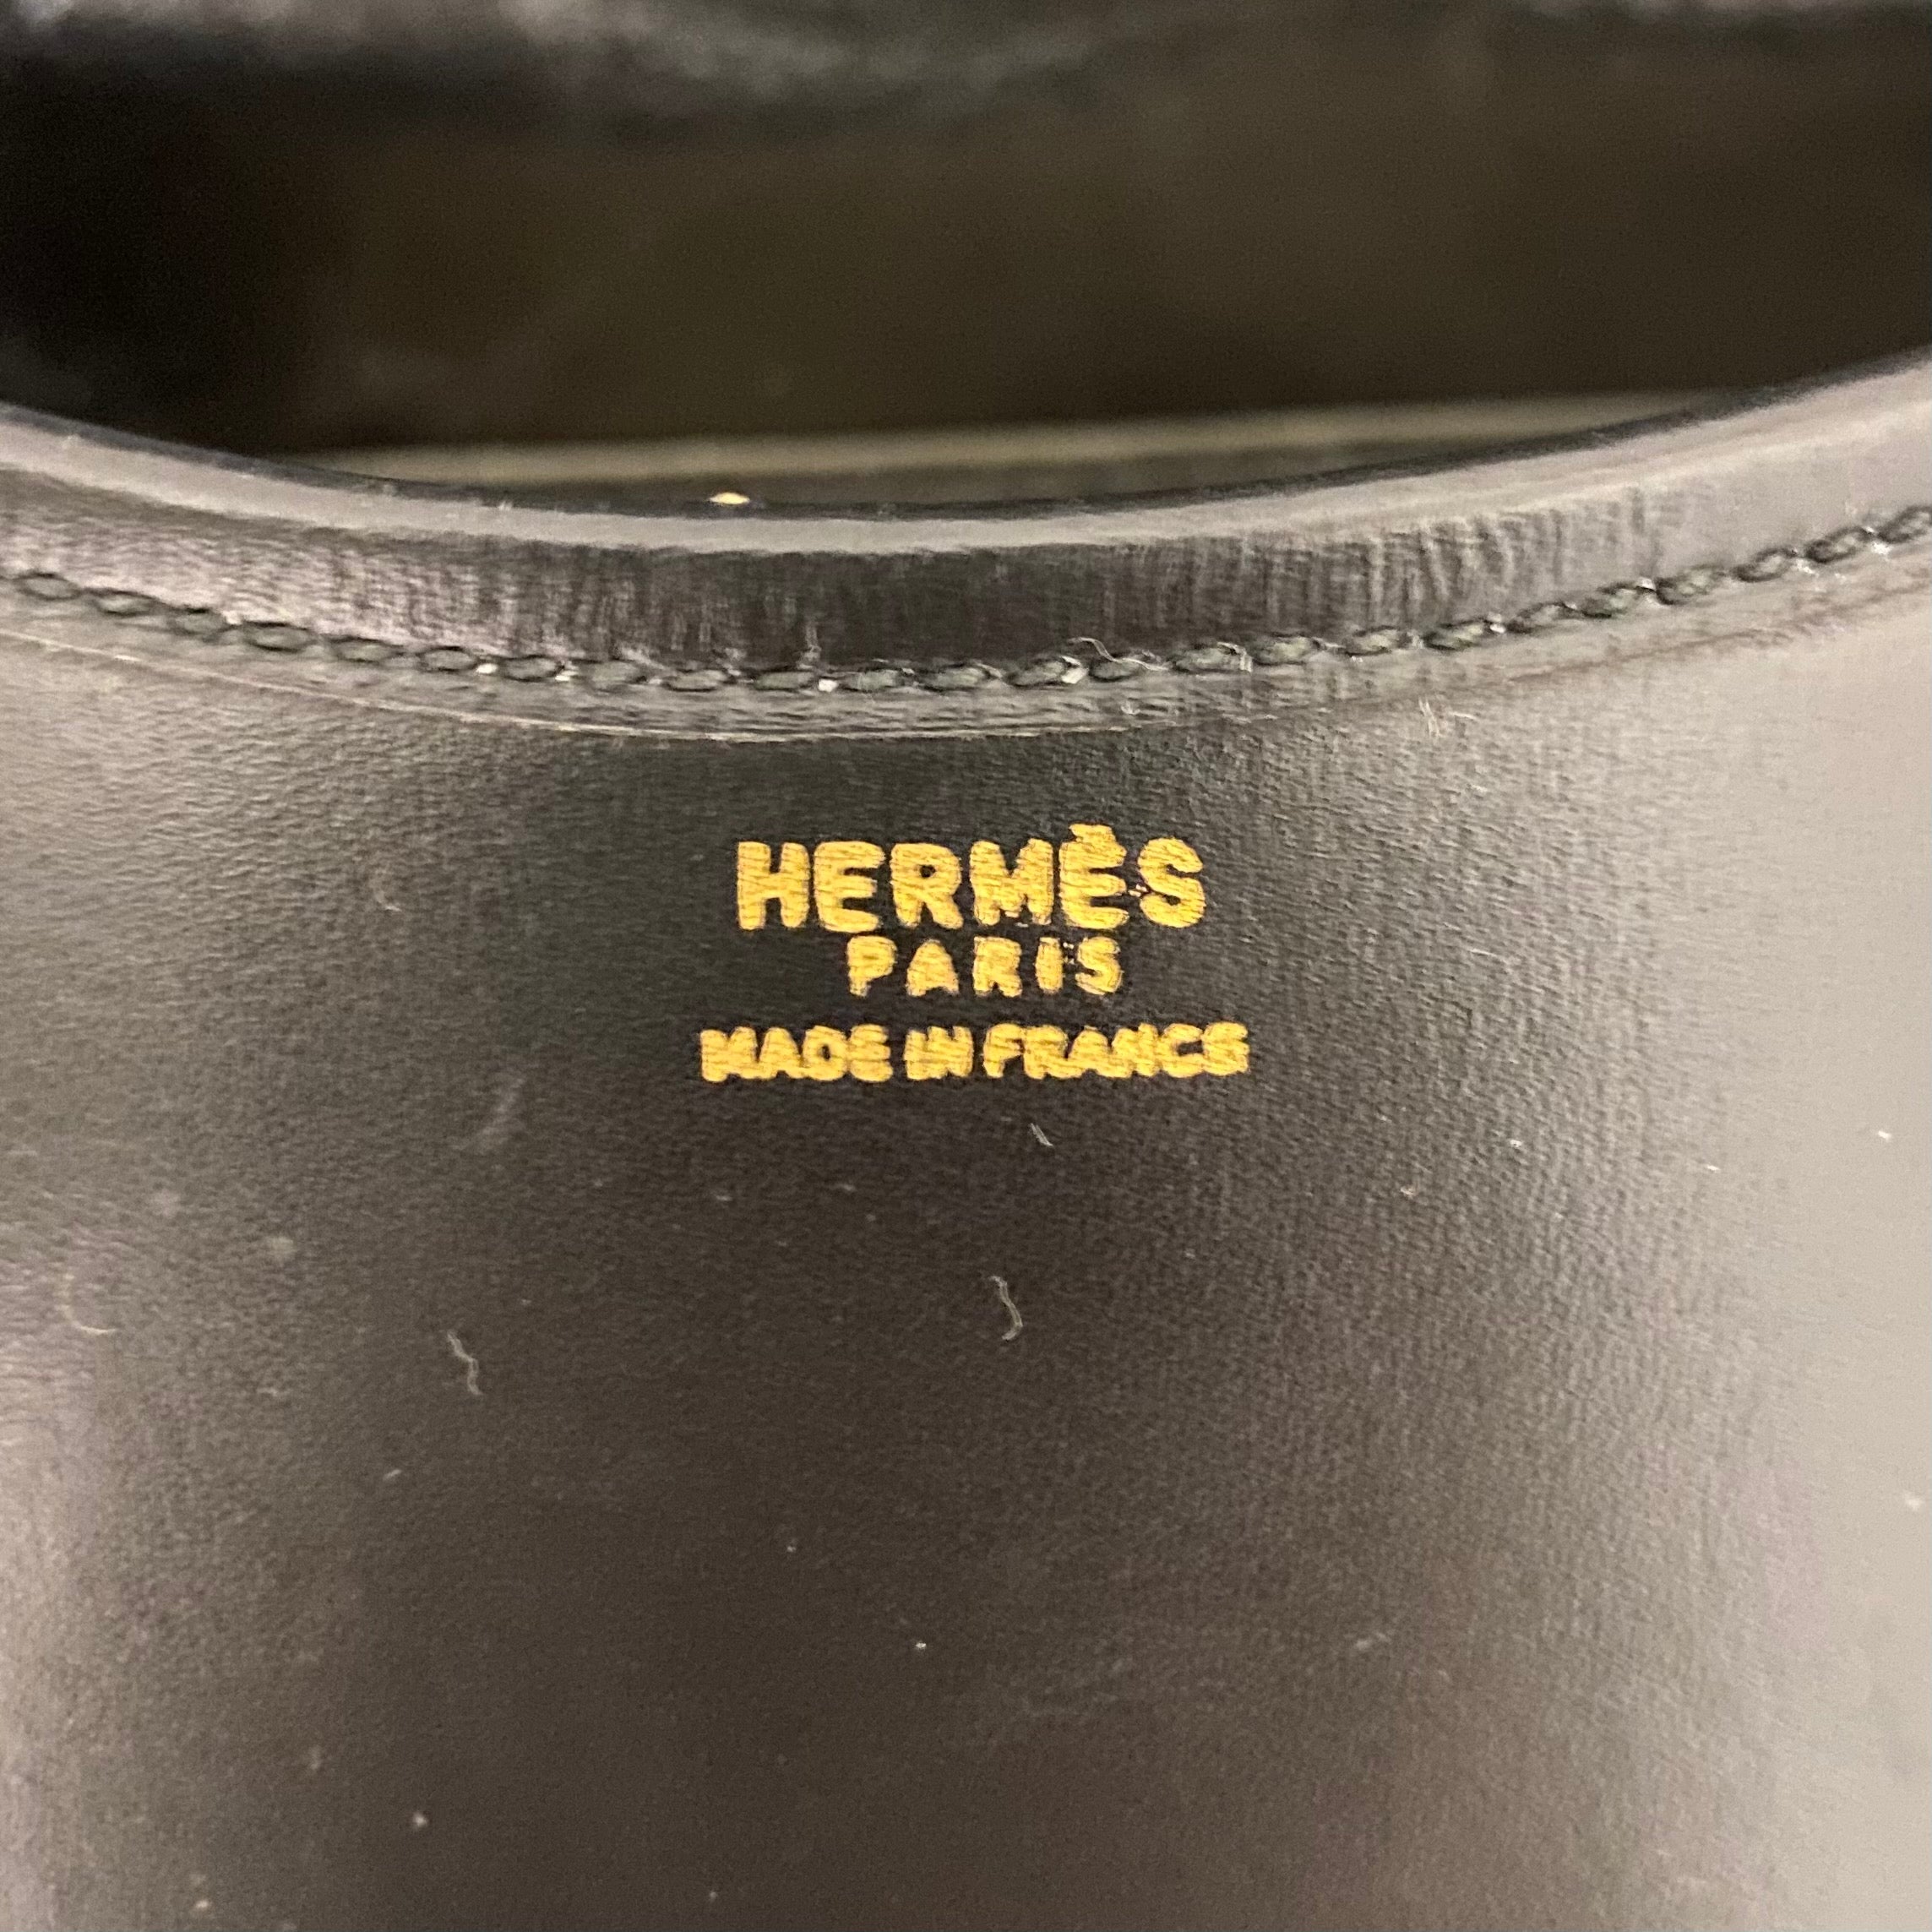 Hermès Vintage Black Shoulder Bag